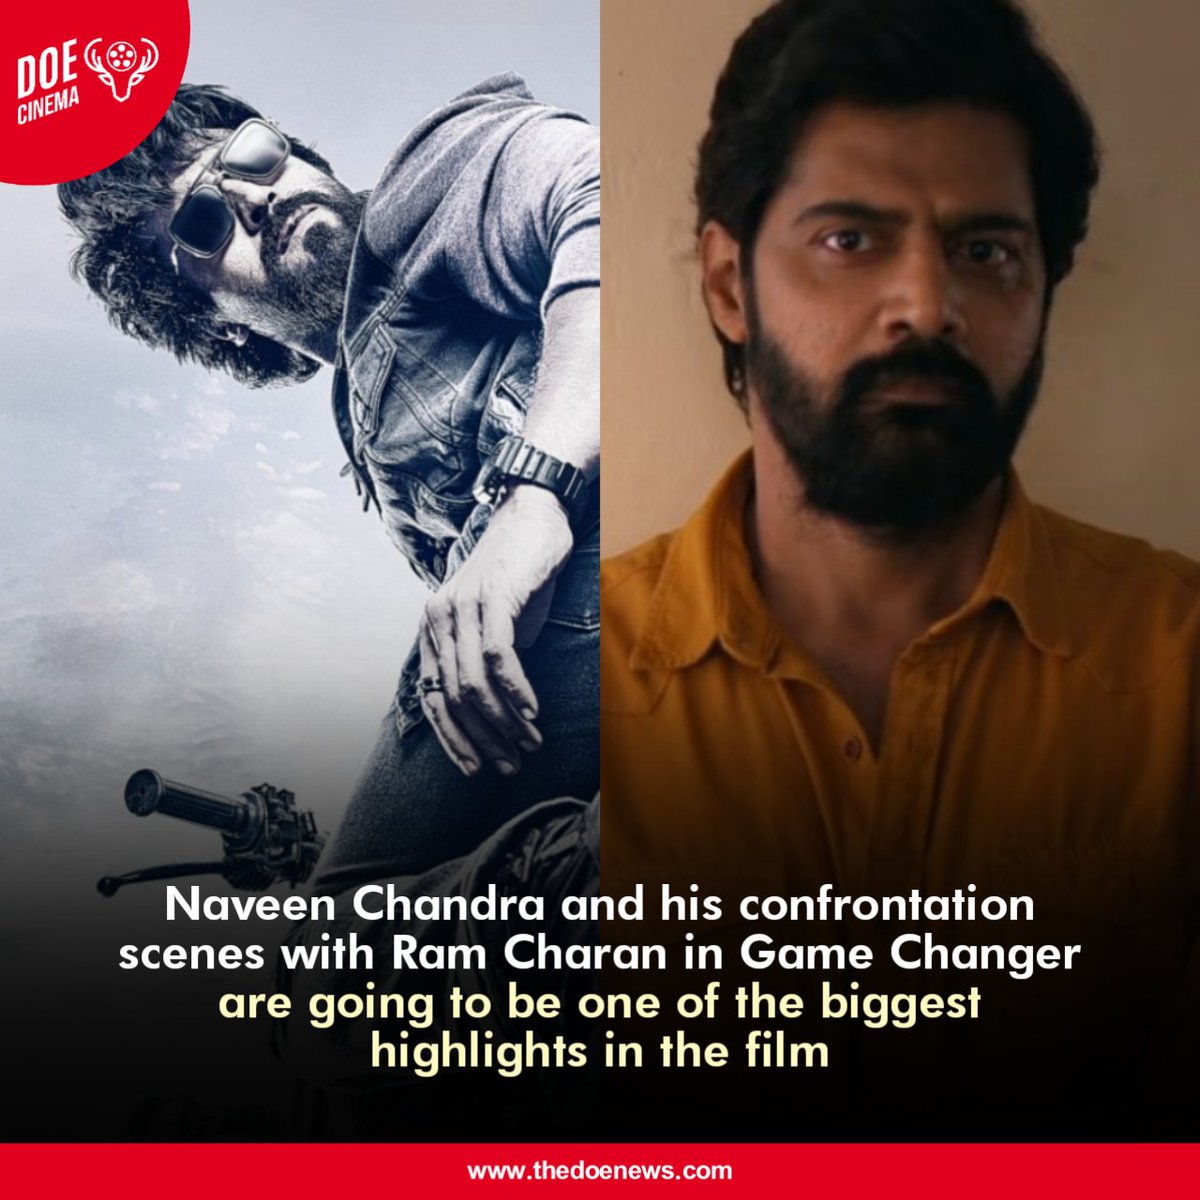 #NaveenChandra is playing a key role in Shankar's #GameChanger 

#RamCharan #KiaraAdvani